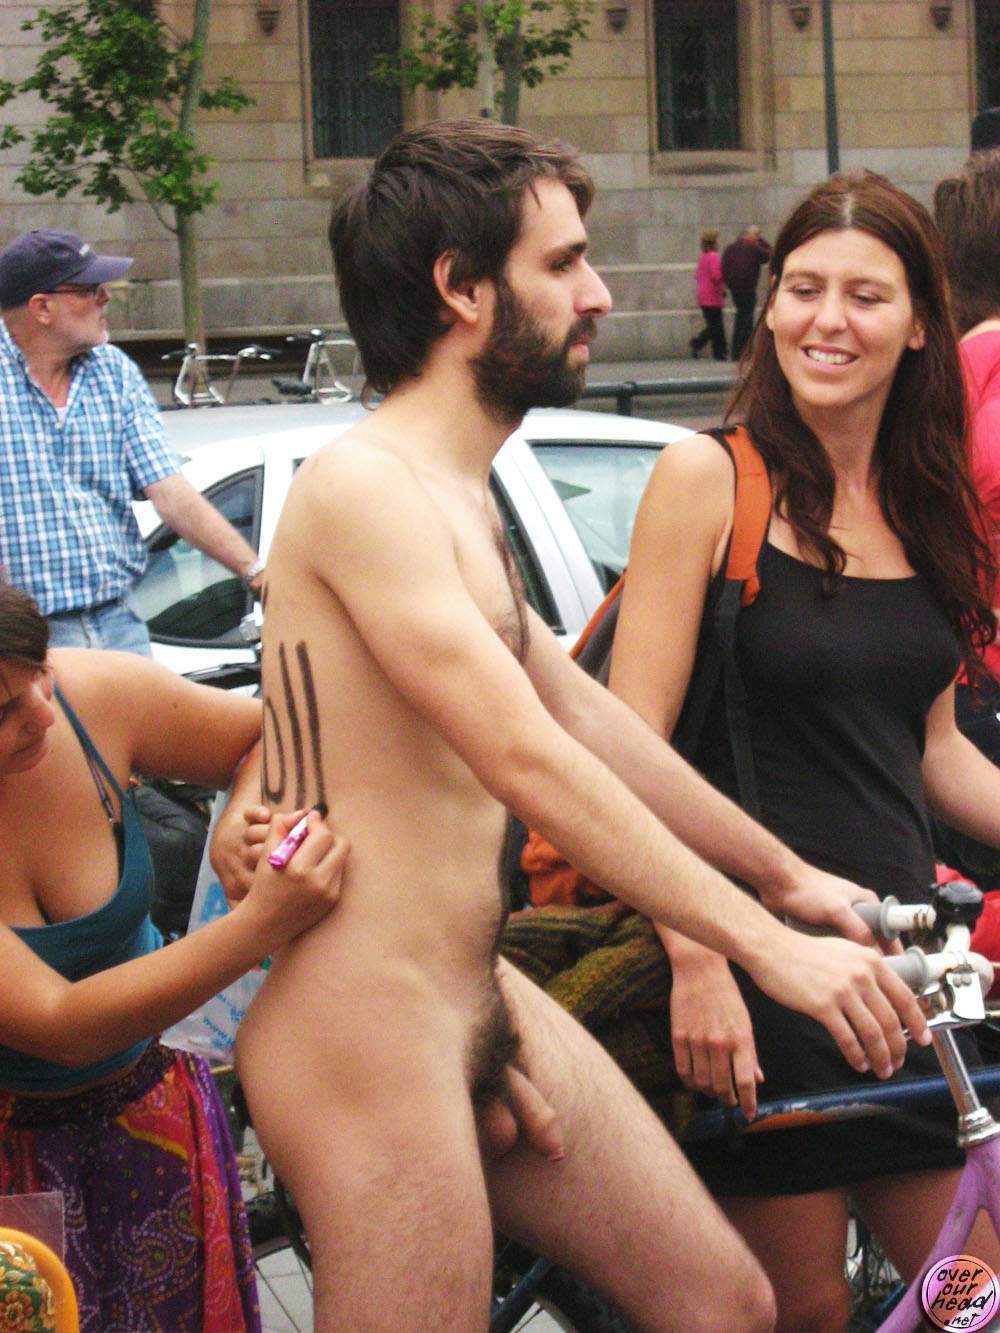 nude guy outdoor